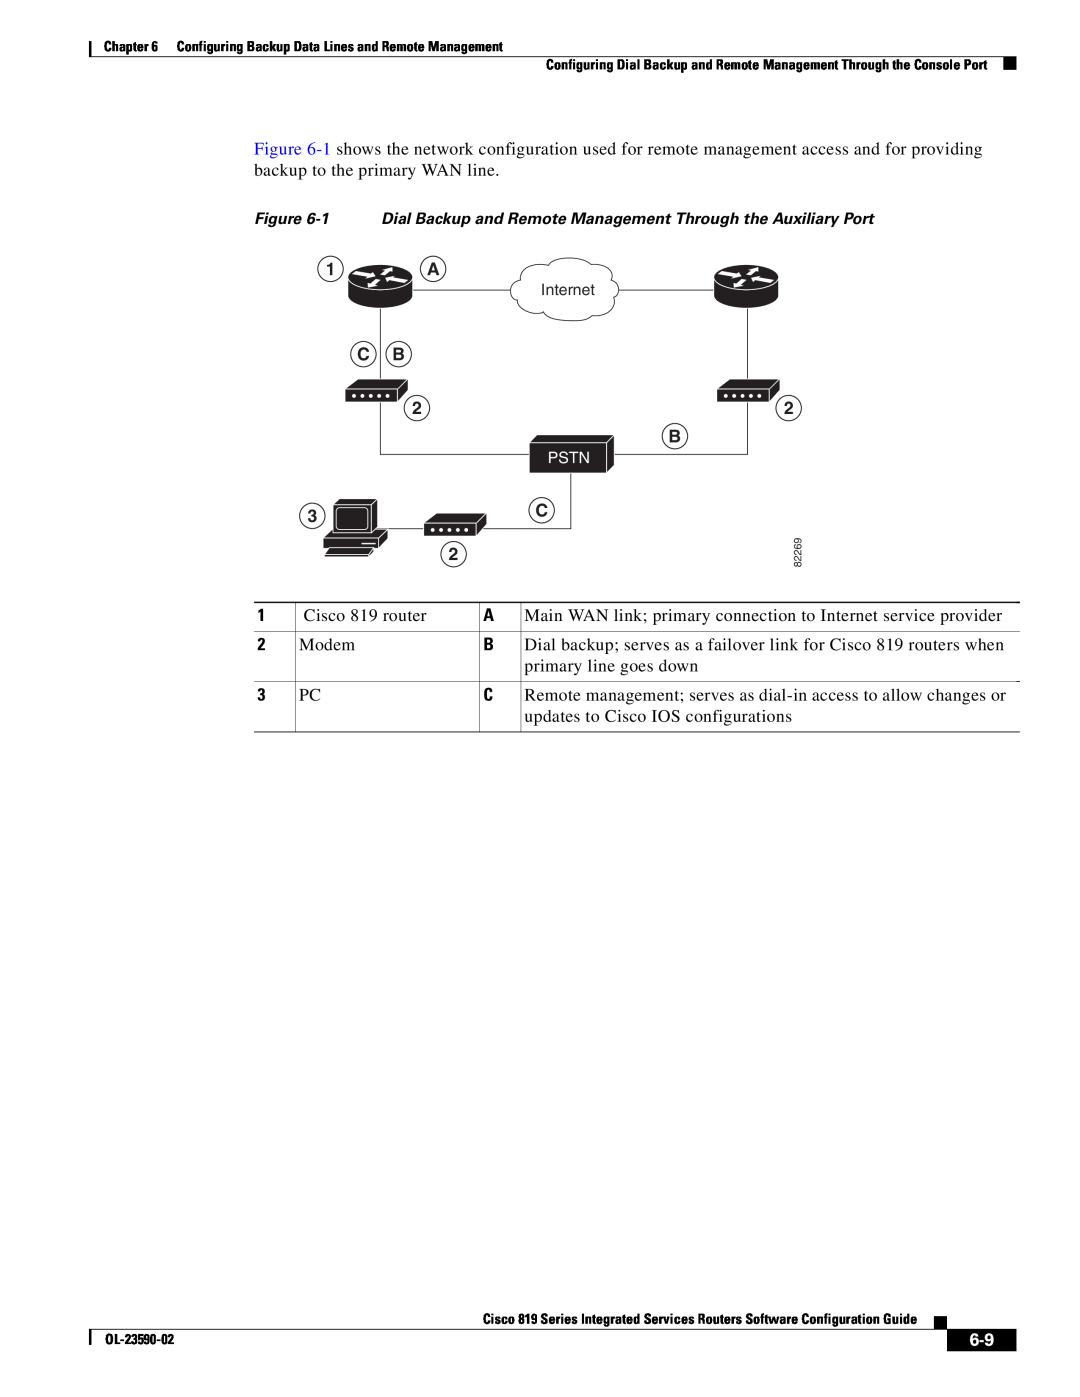 Cisco Systems C819HG4GVK9, C819GUK9 manual 1 A, Cisco 819 router 